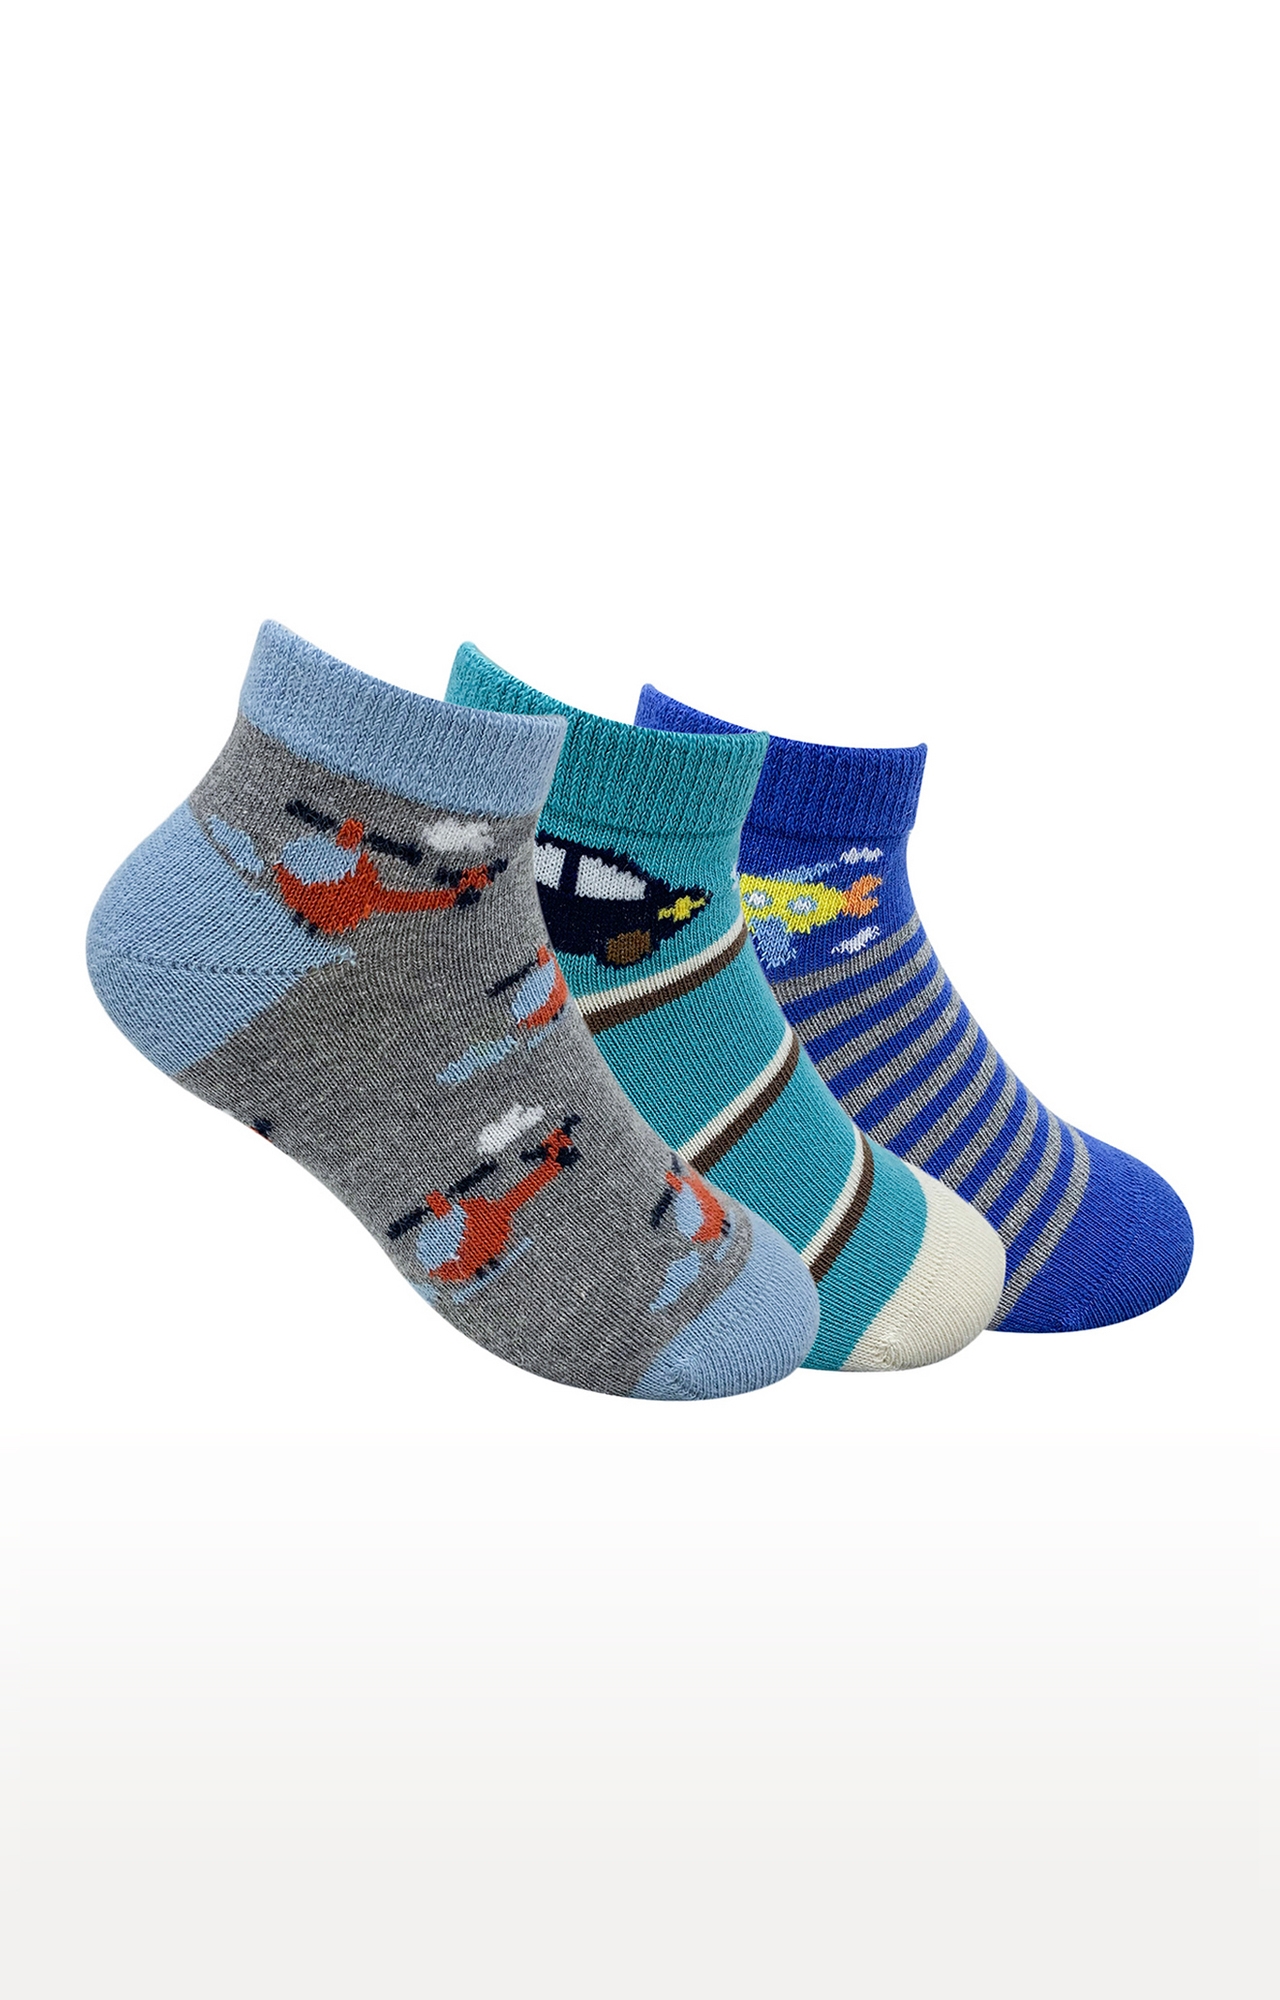 Mint & Oak Transport Menia Cotton Multi Ankle Length Socks for Kids - Pack of 3